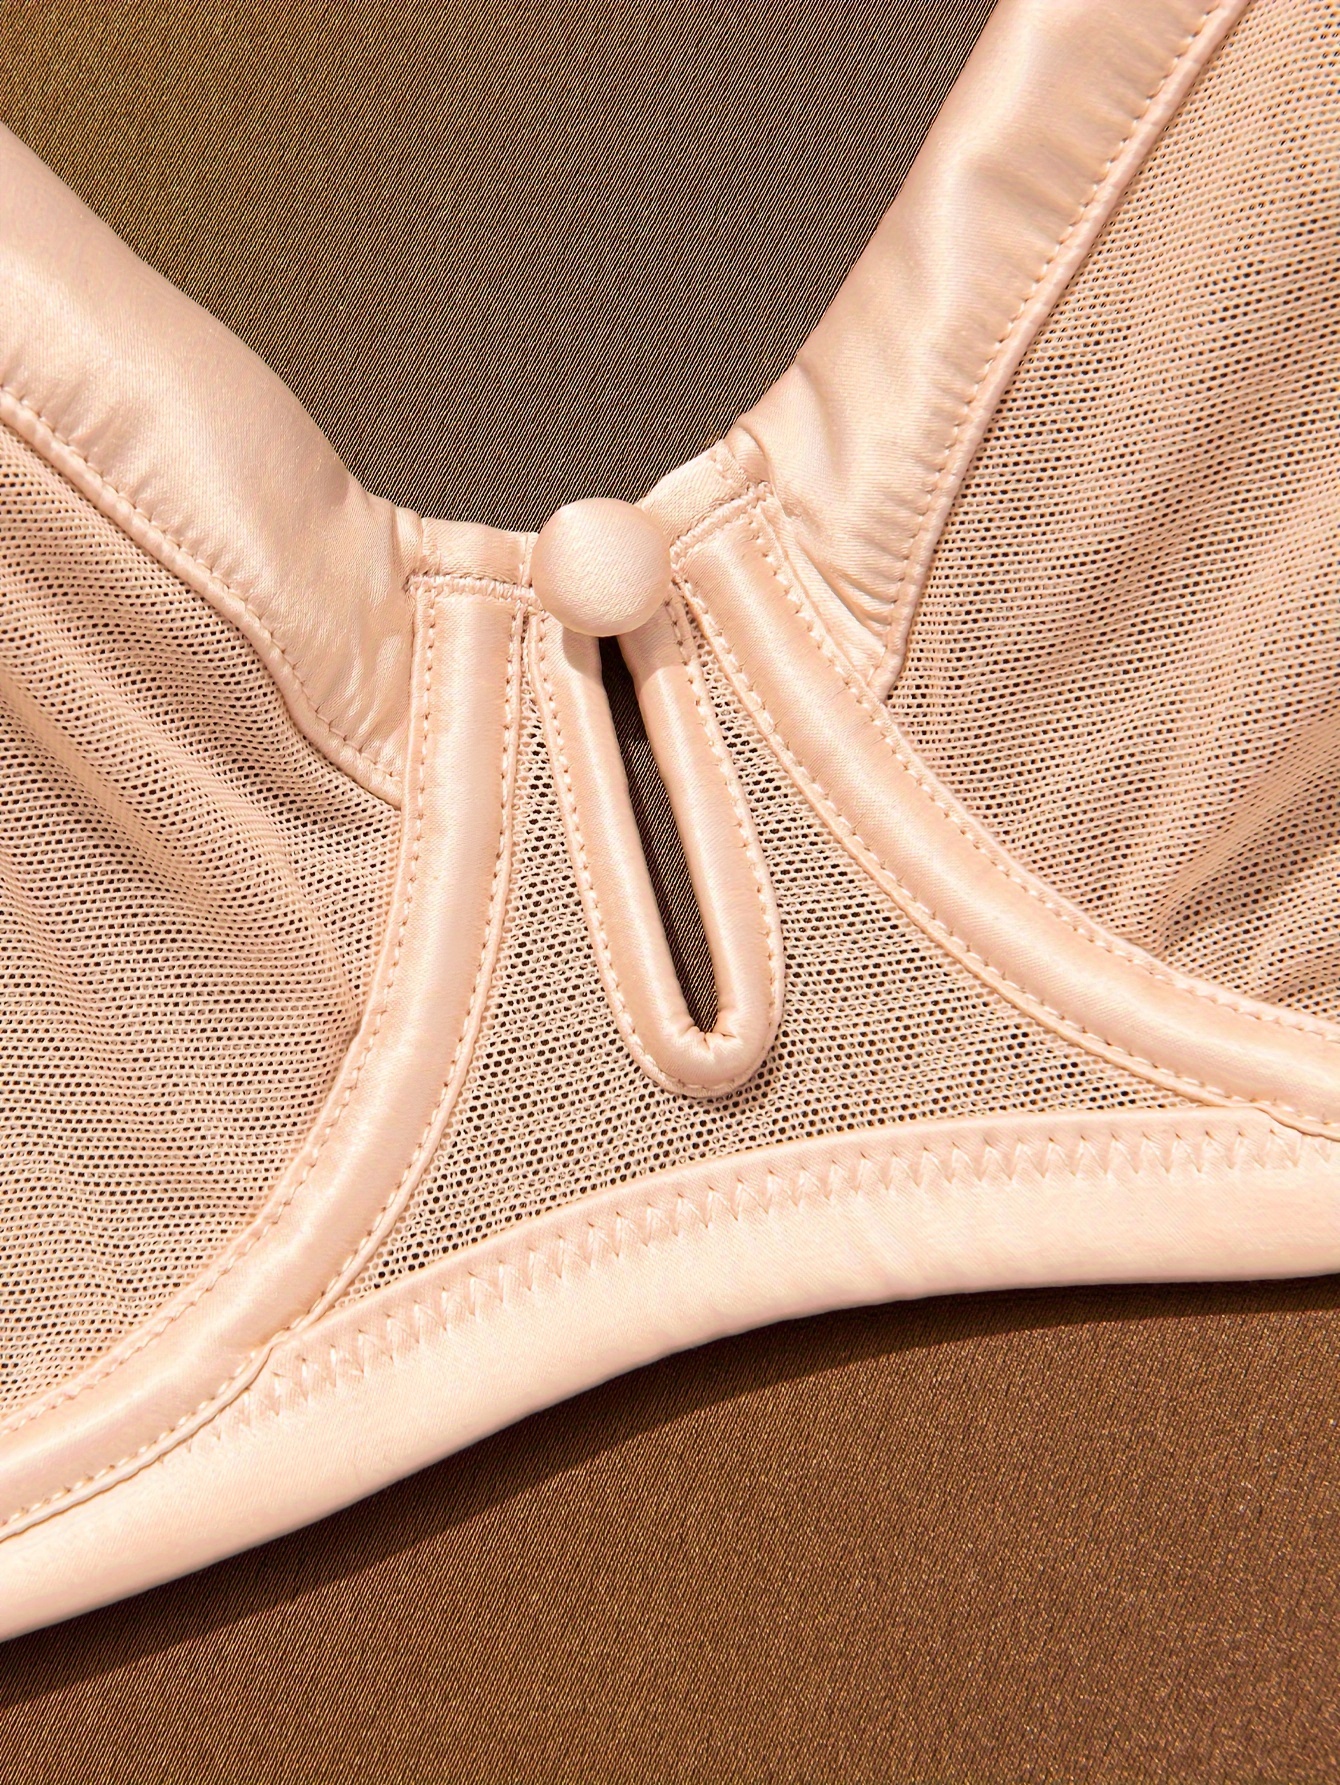 Deyllo Women's Sheer Mesh Lace Unlined Underwire Bra Sexy See-Through Demi  Bralette?Beige 32DD 